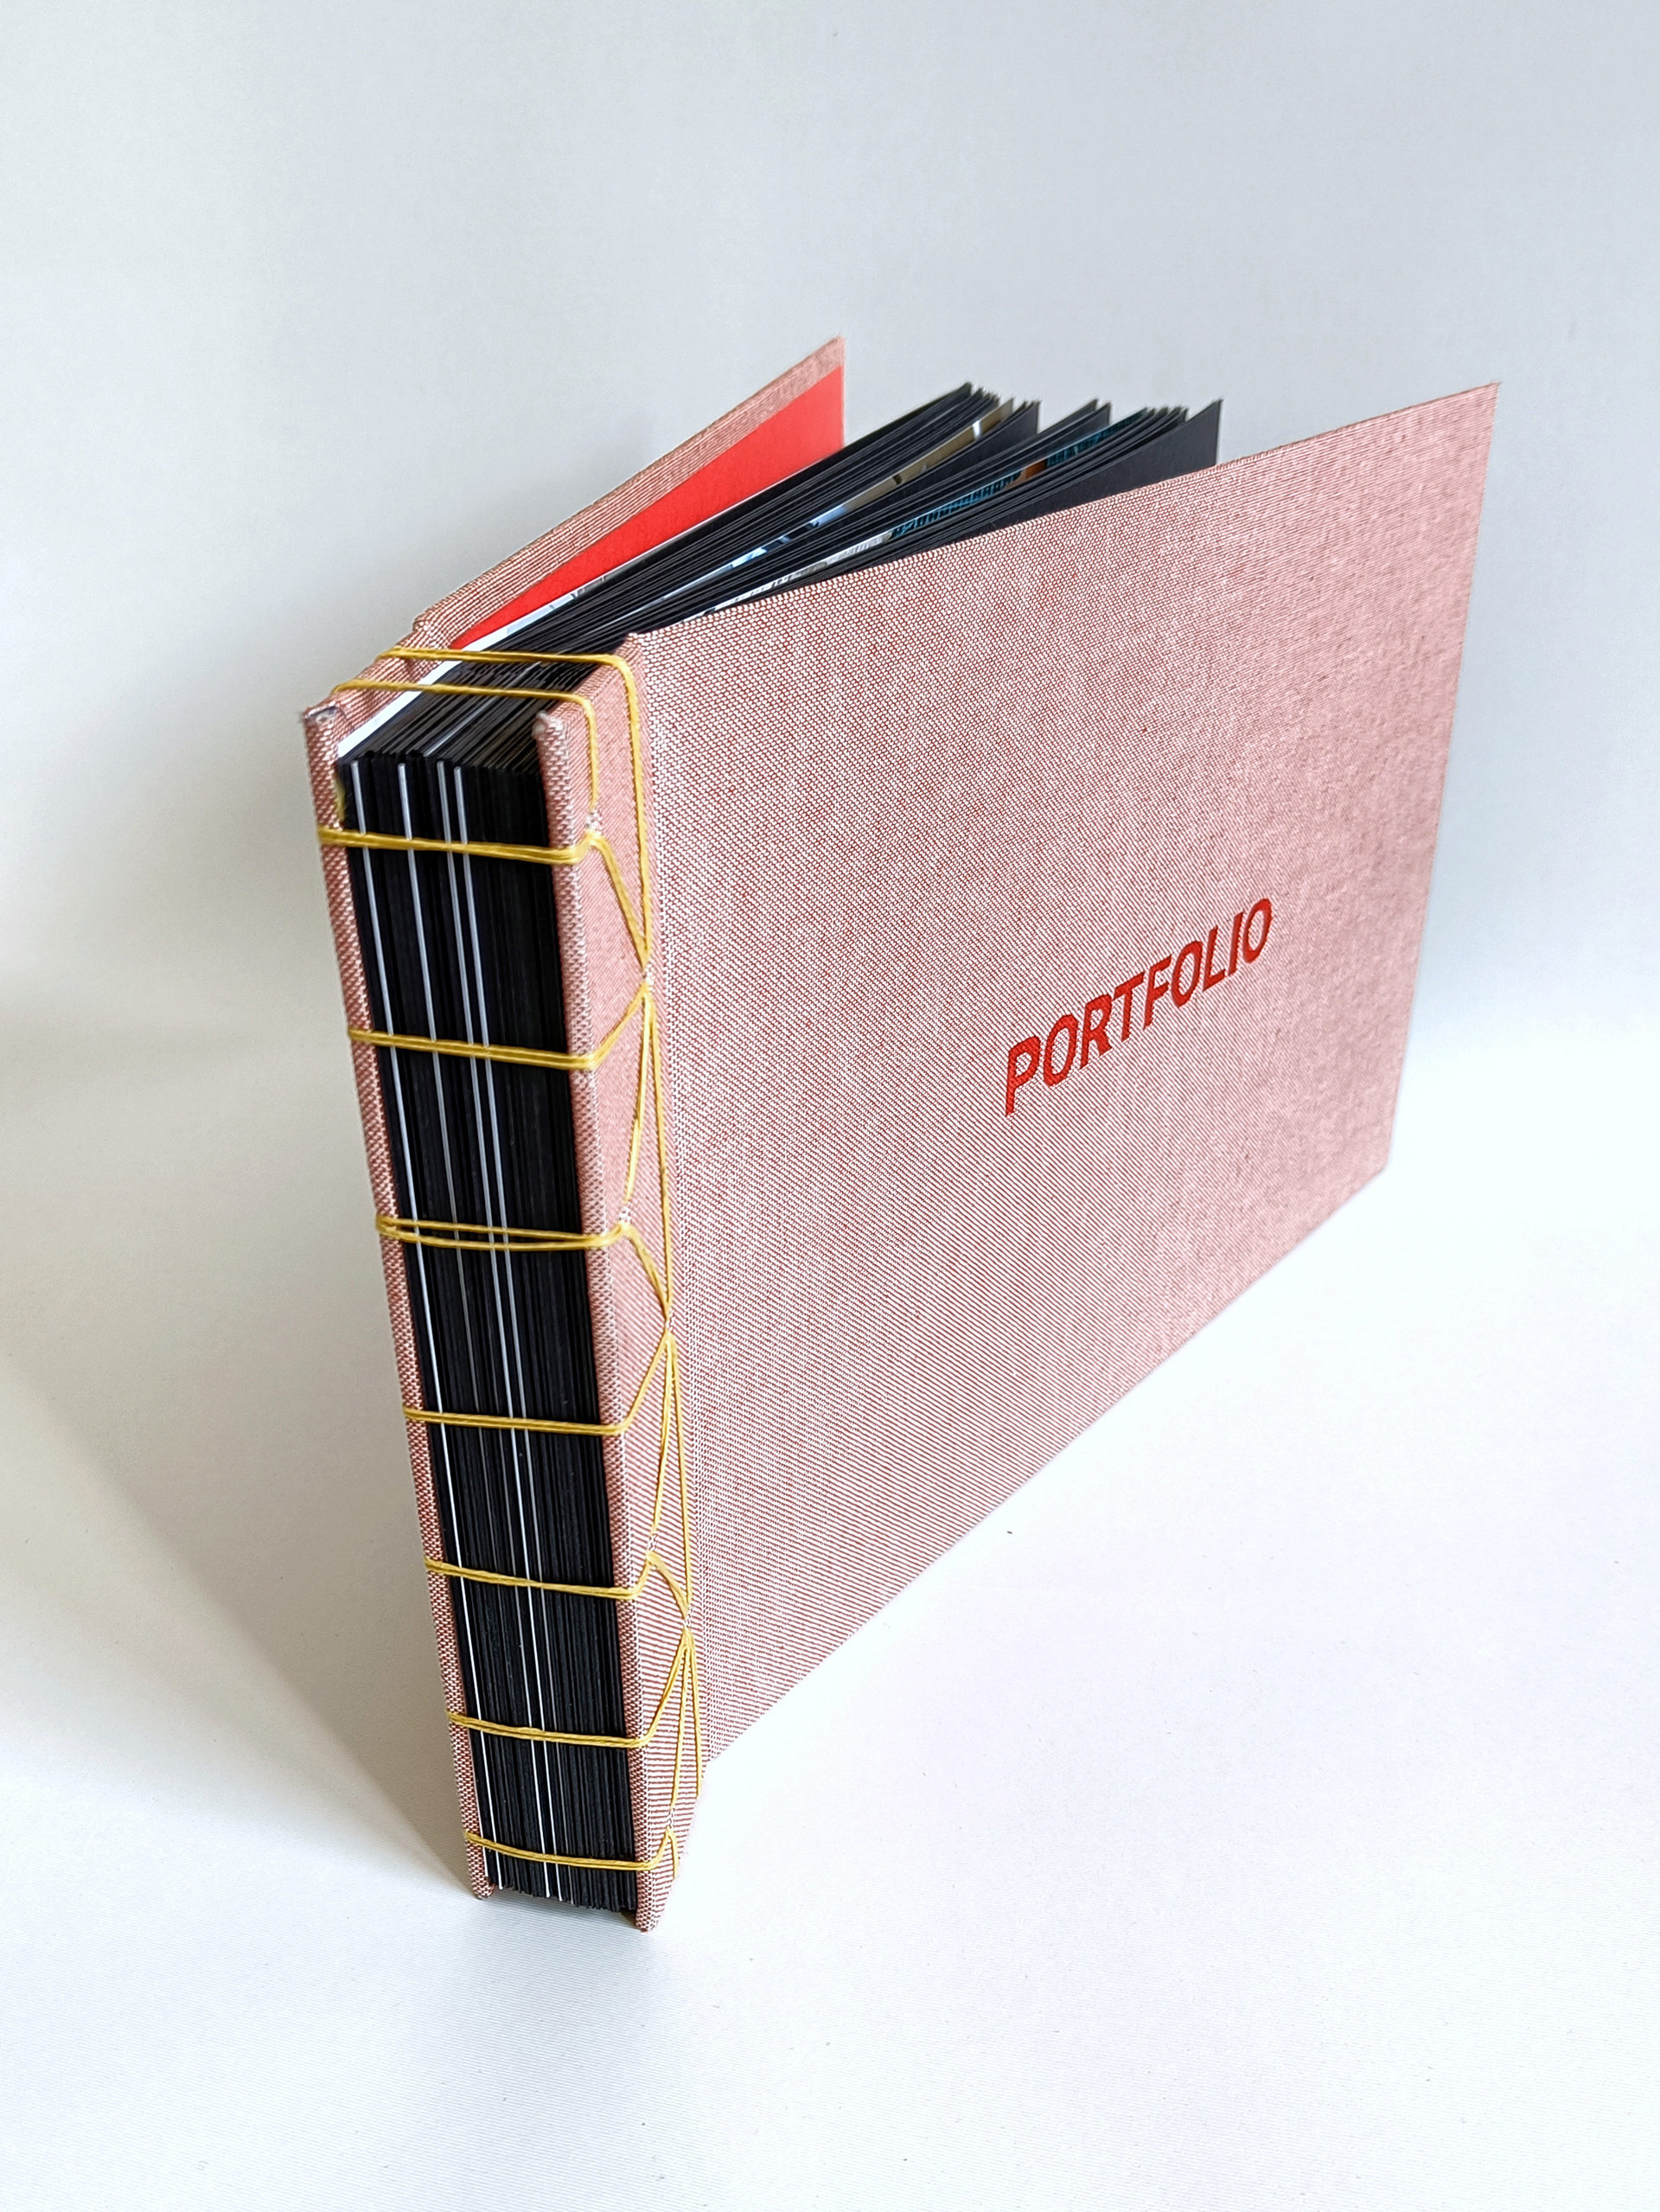 Fotografia przedstawia Portfolio w formie albumu, z widocznym szyciem żółtą nitką na grzbiecie, oprawa sztywna, na okładce widoczny tłoczony napis PORTFOLIO.